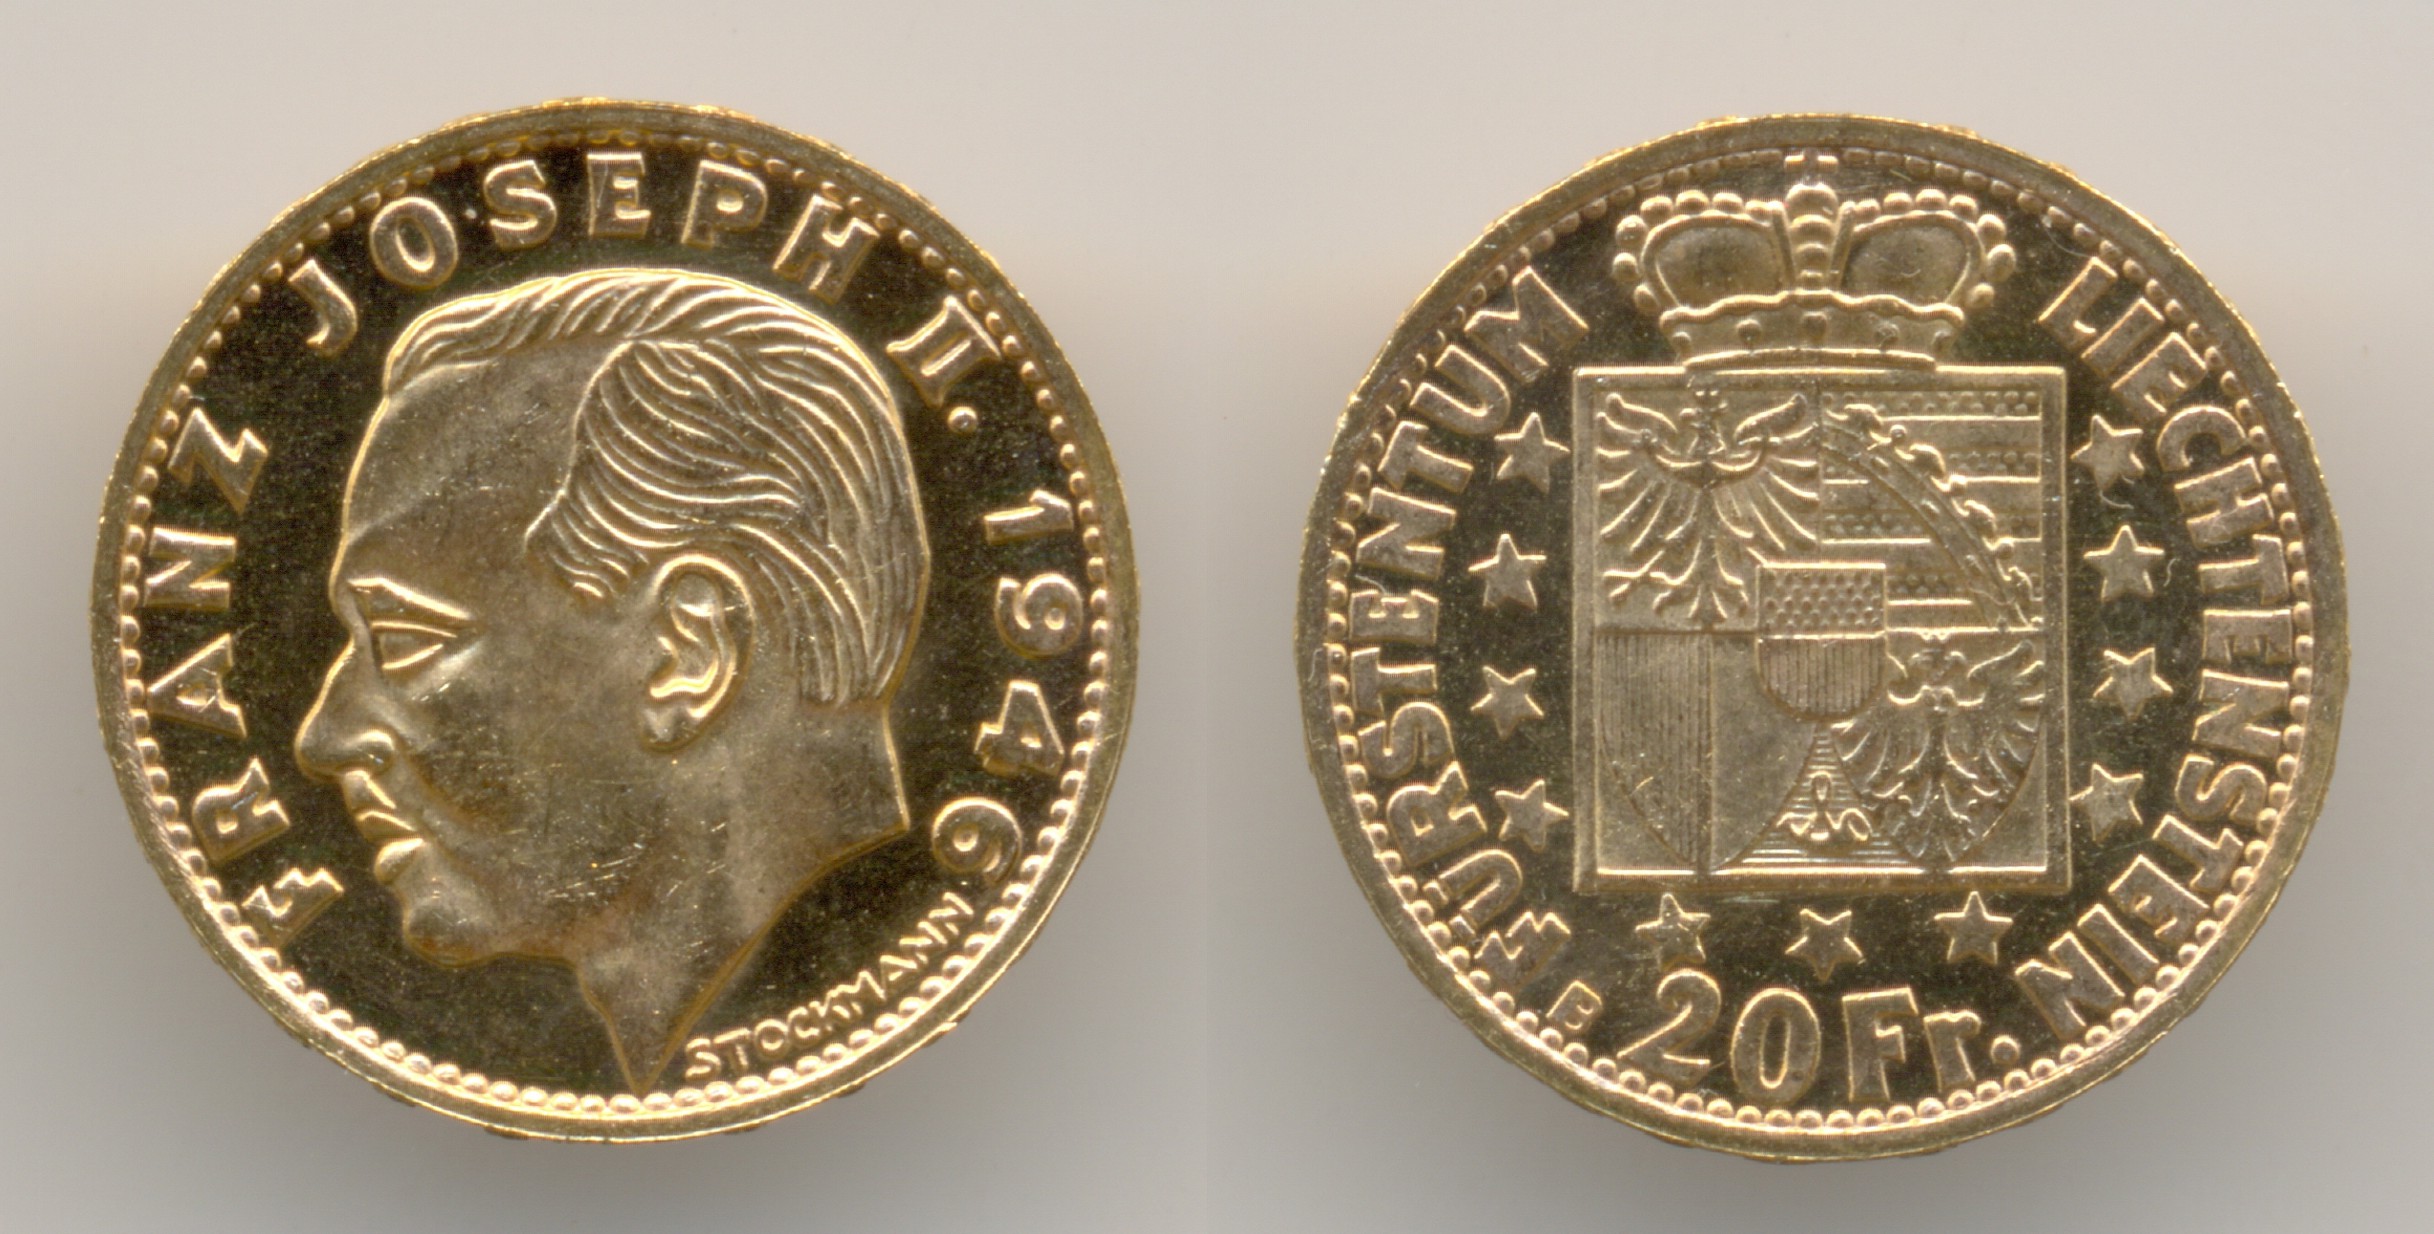 Нумизматика. Золотая монета. Лихтенштейн, 20 франков 1946 года.